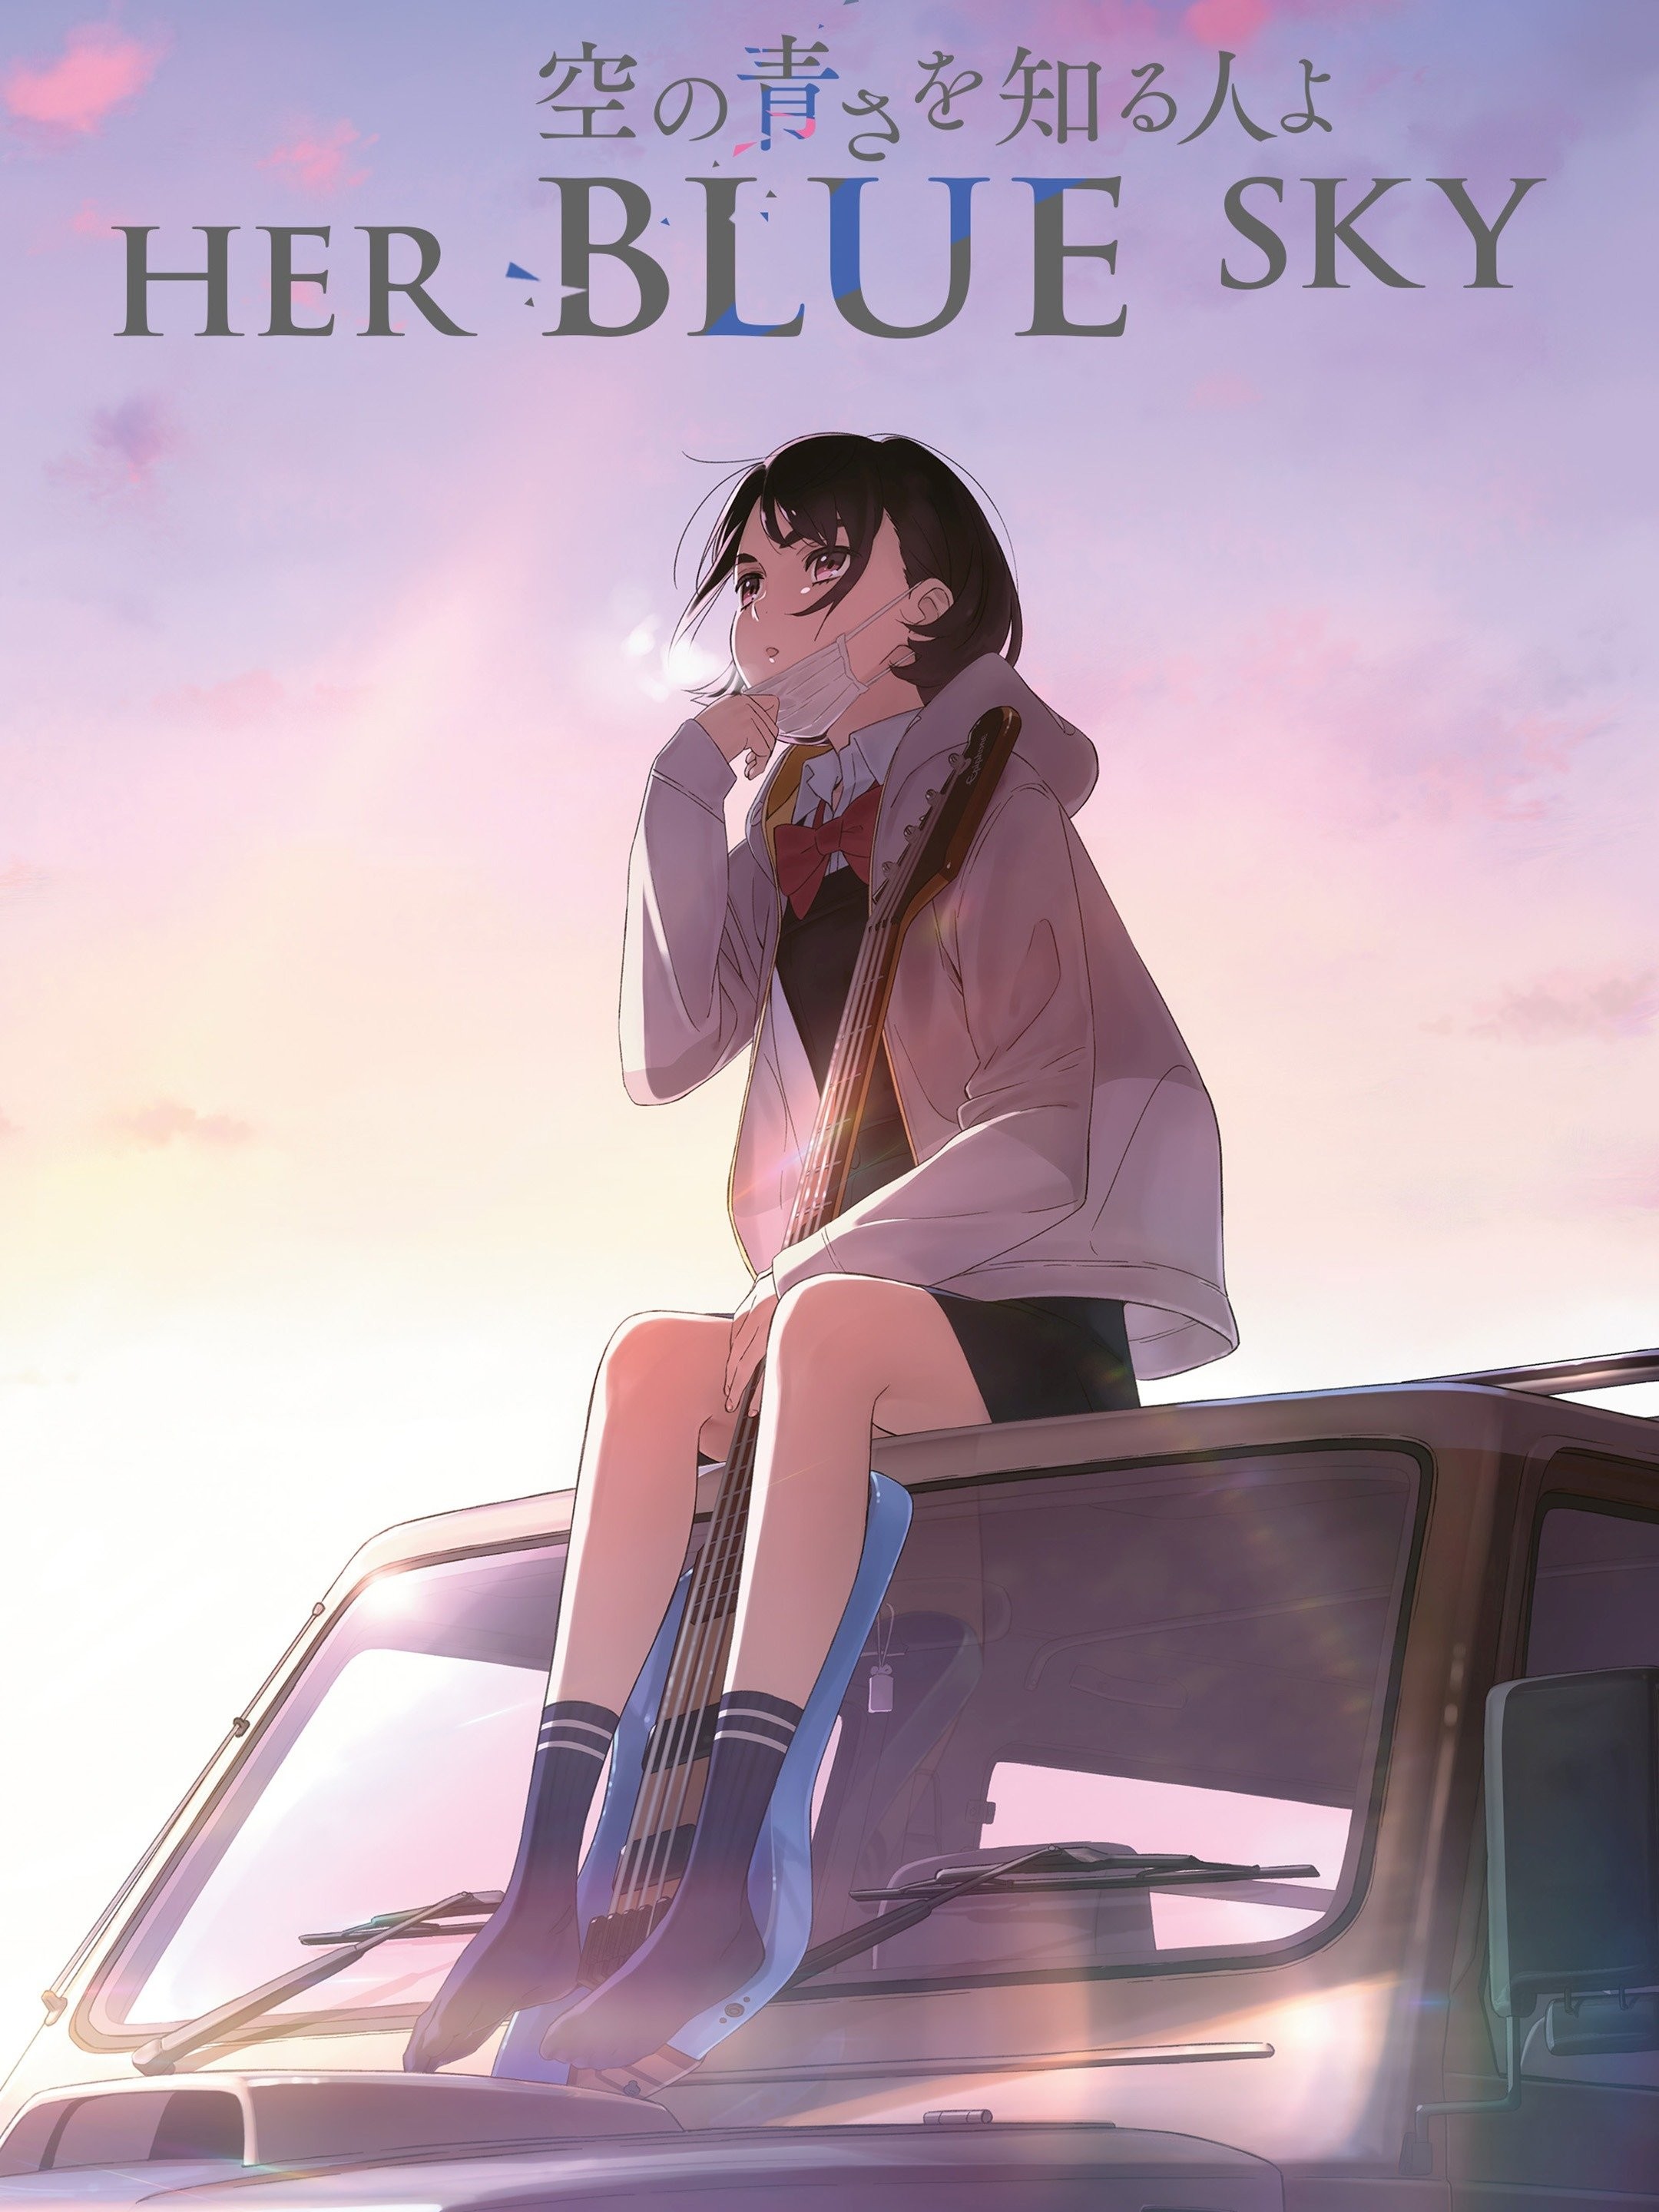 Anime Like Her Blue Sky